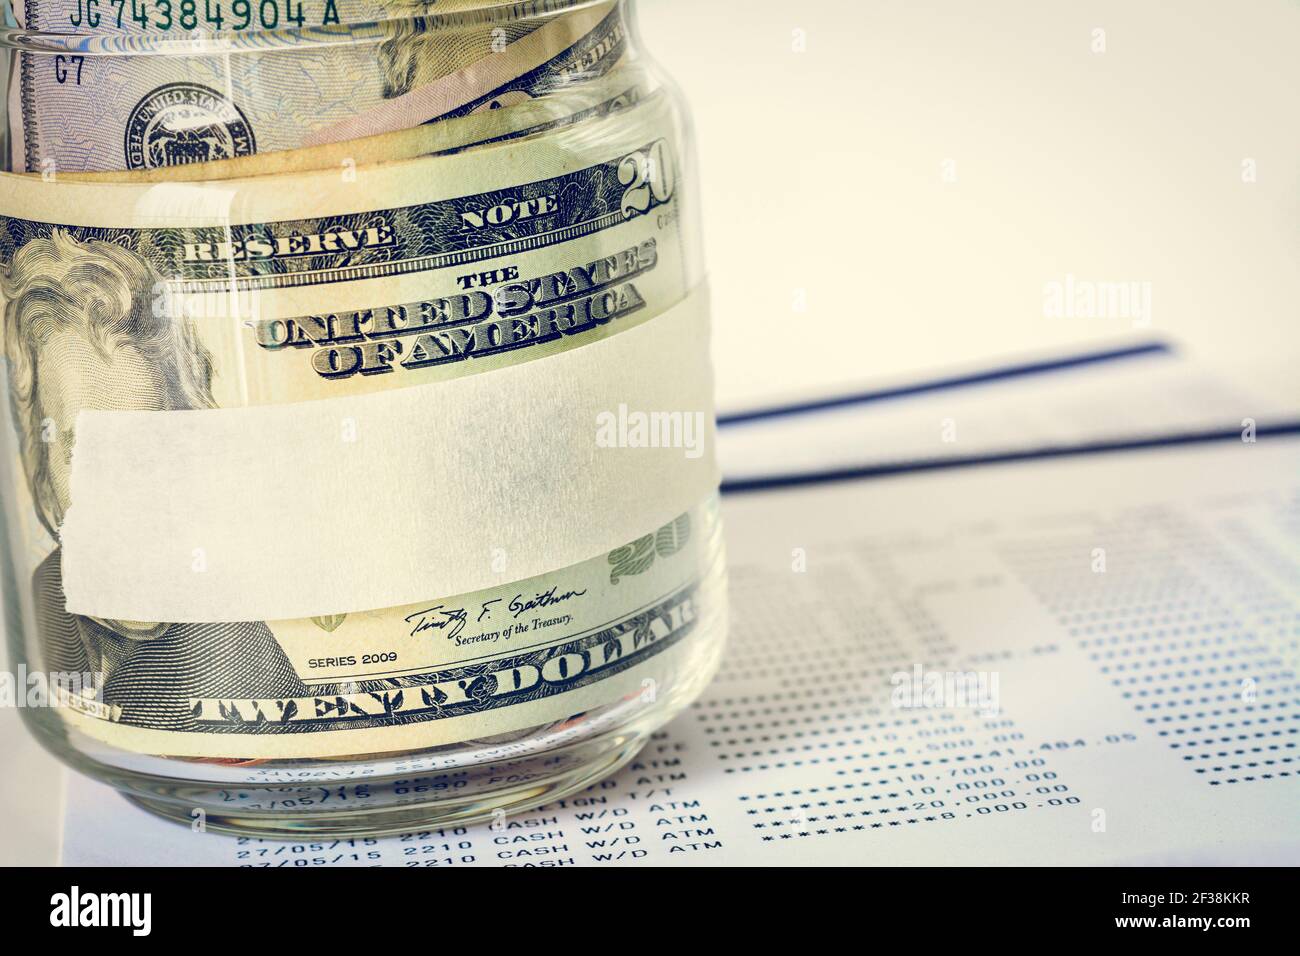 Geld, US-Dollar (USD) Banknoten, im Glas mit leerem Etikett - Finanz-, Geschäfts-, Investitions- und Rechnungslegungskonzepte Stockfoto